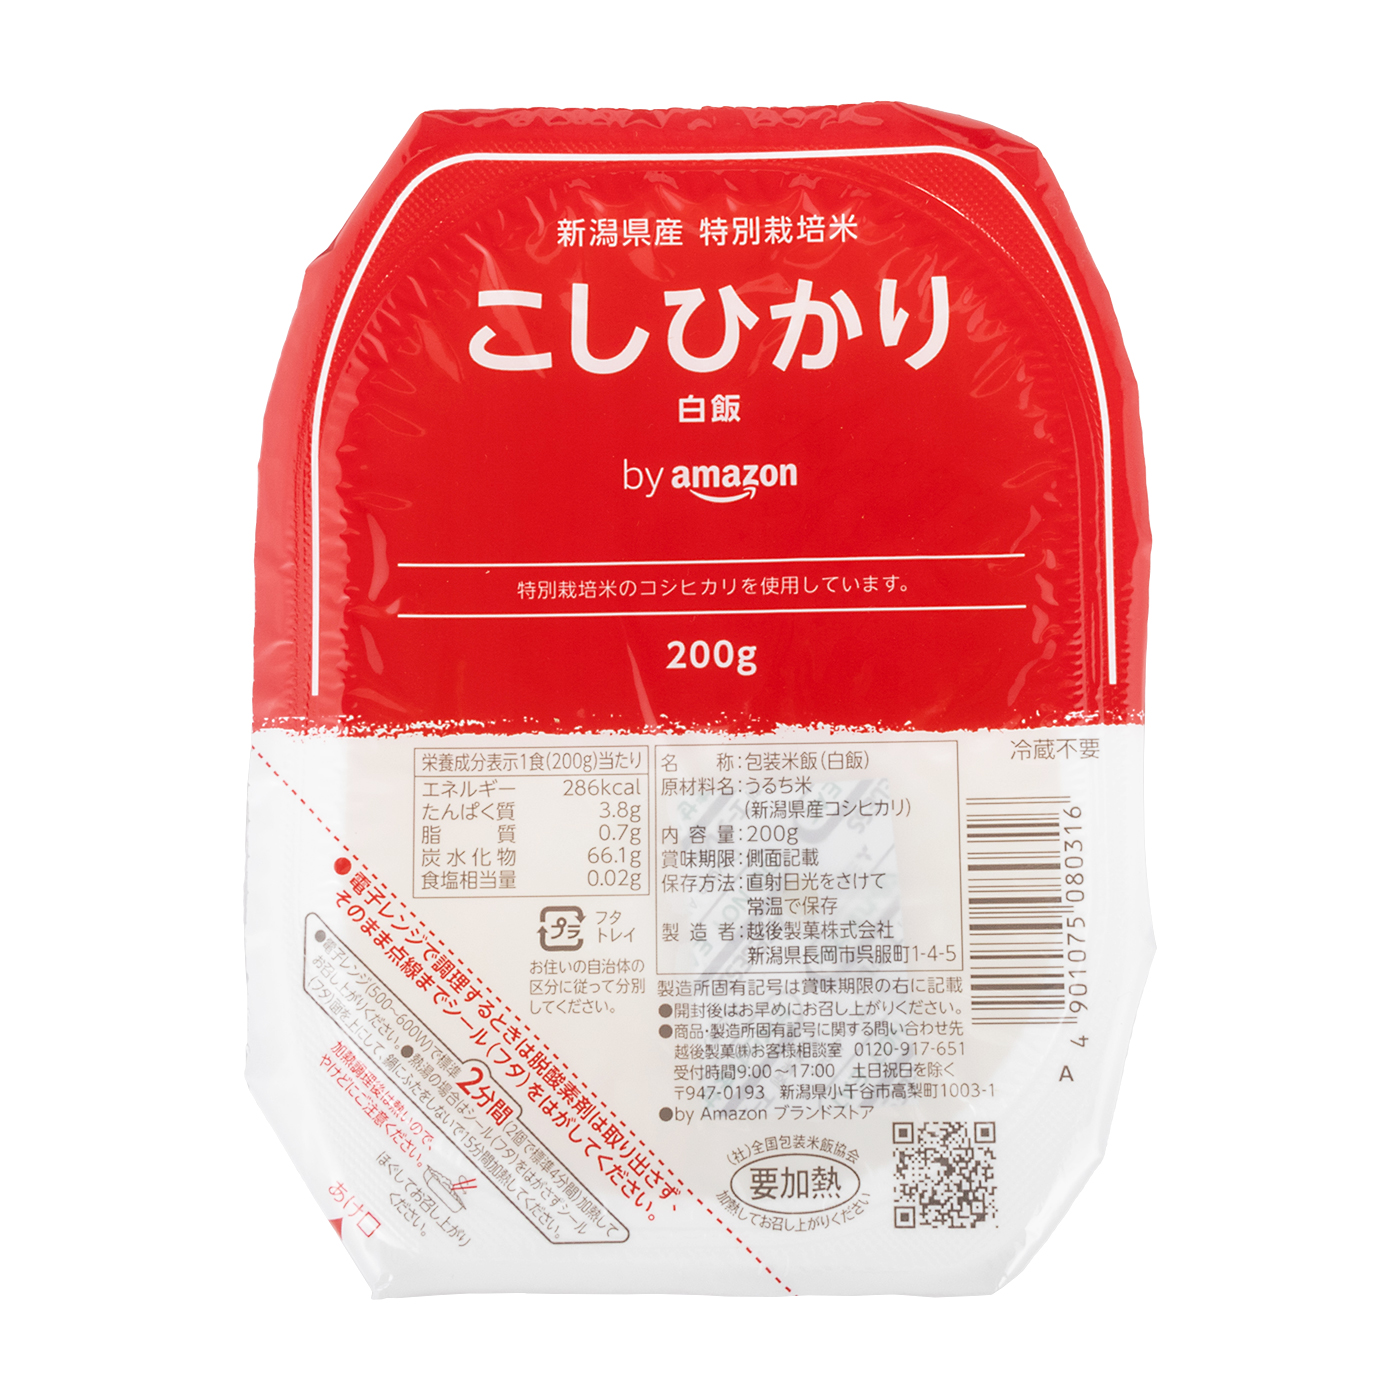 パックご飯 新潟県産こしひかり 200g×20個(白米) by 特別栽培米